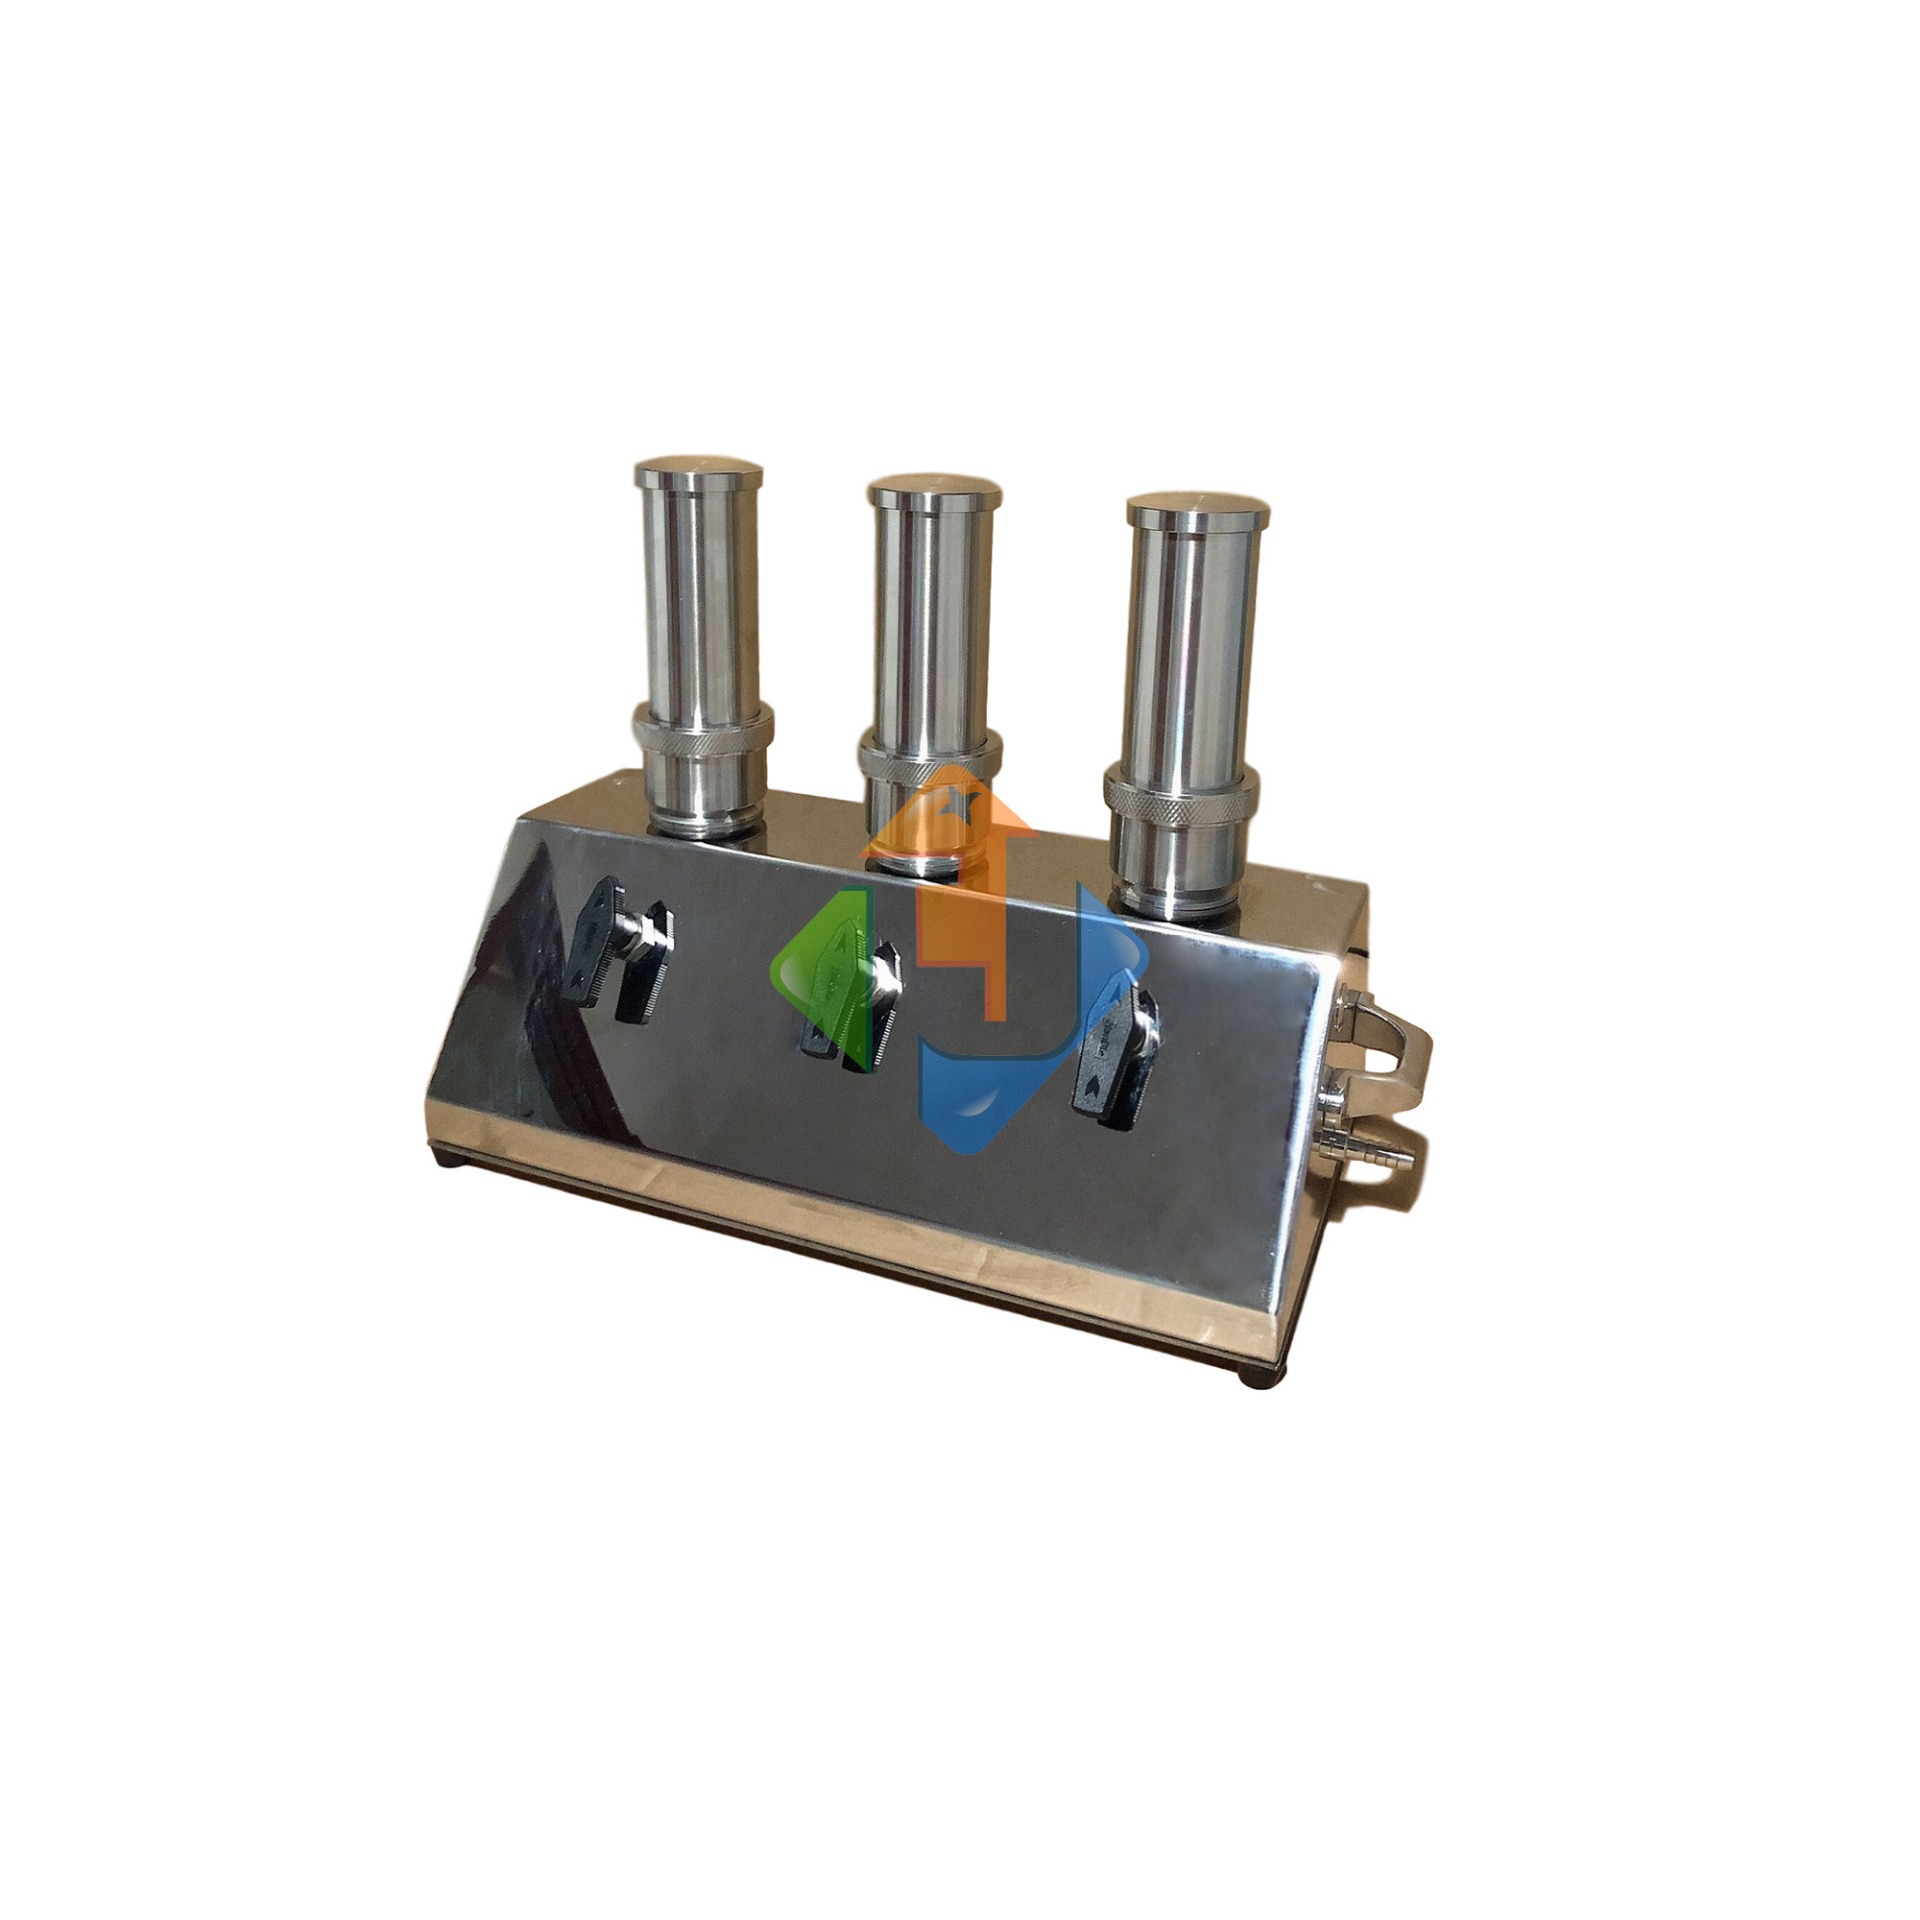 聚莱隔膜泵微生物限度仪JTW-600B台式